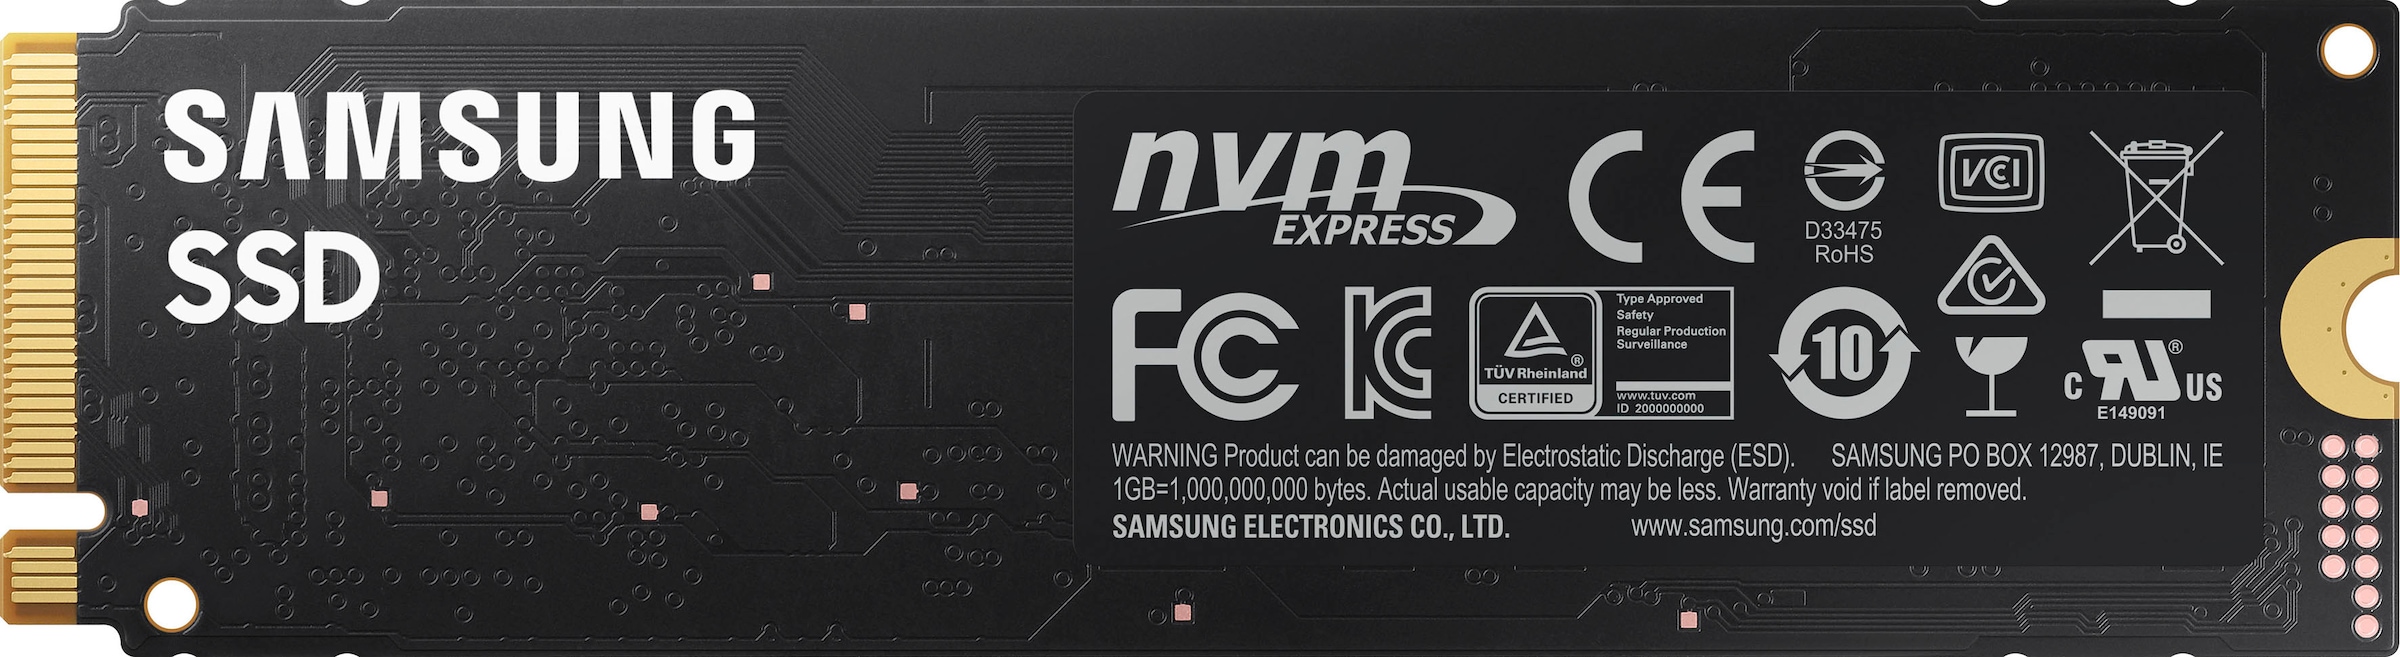 Samsung interne SSD »SSD 980«, Anschluss M.2 PCIe 3.0, NVMe